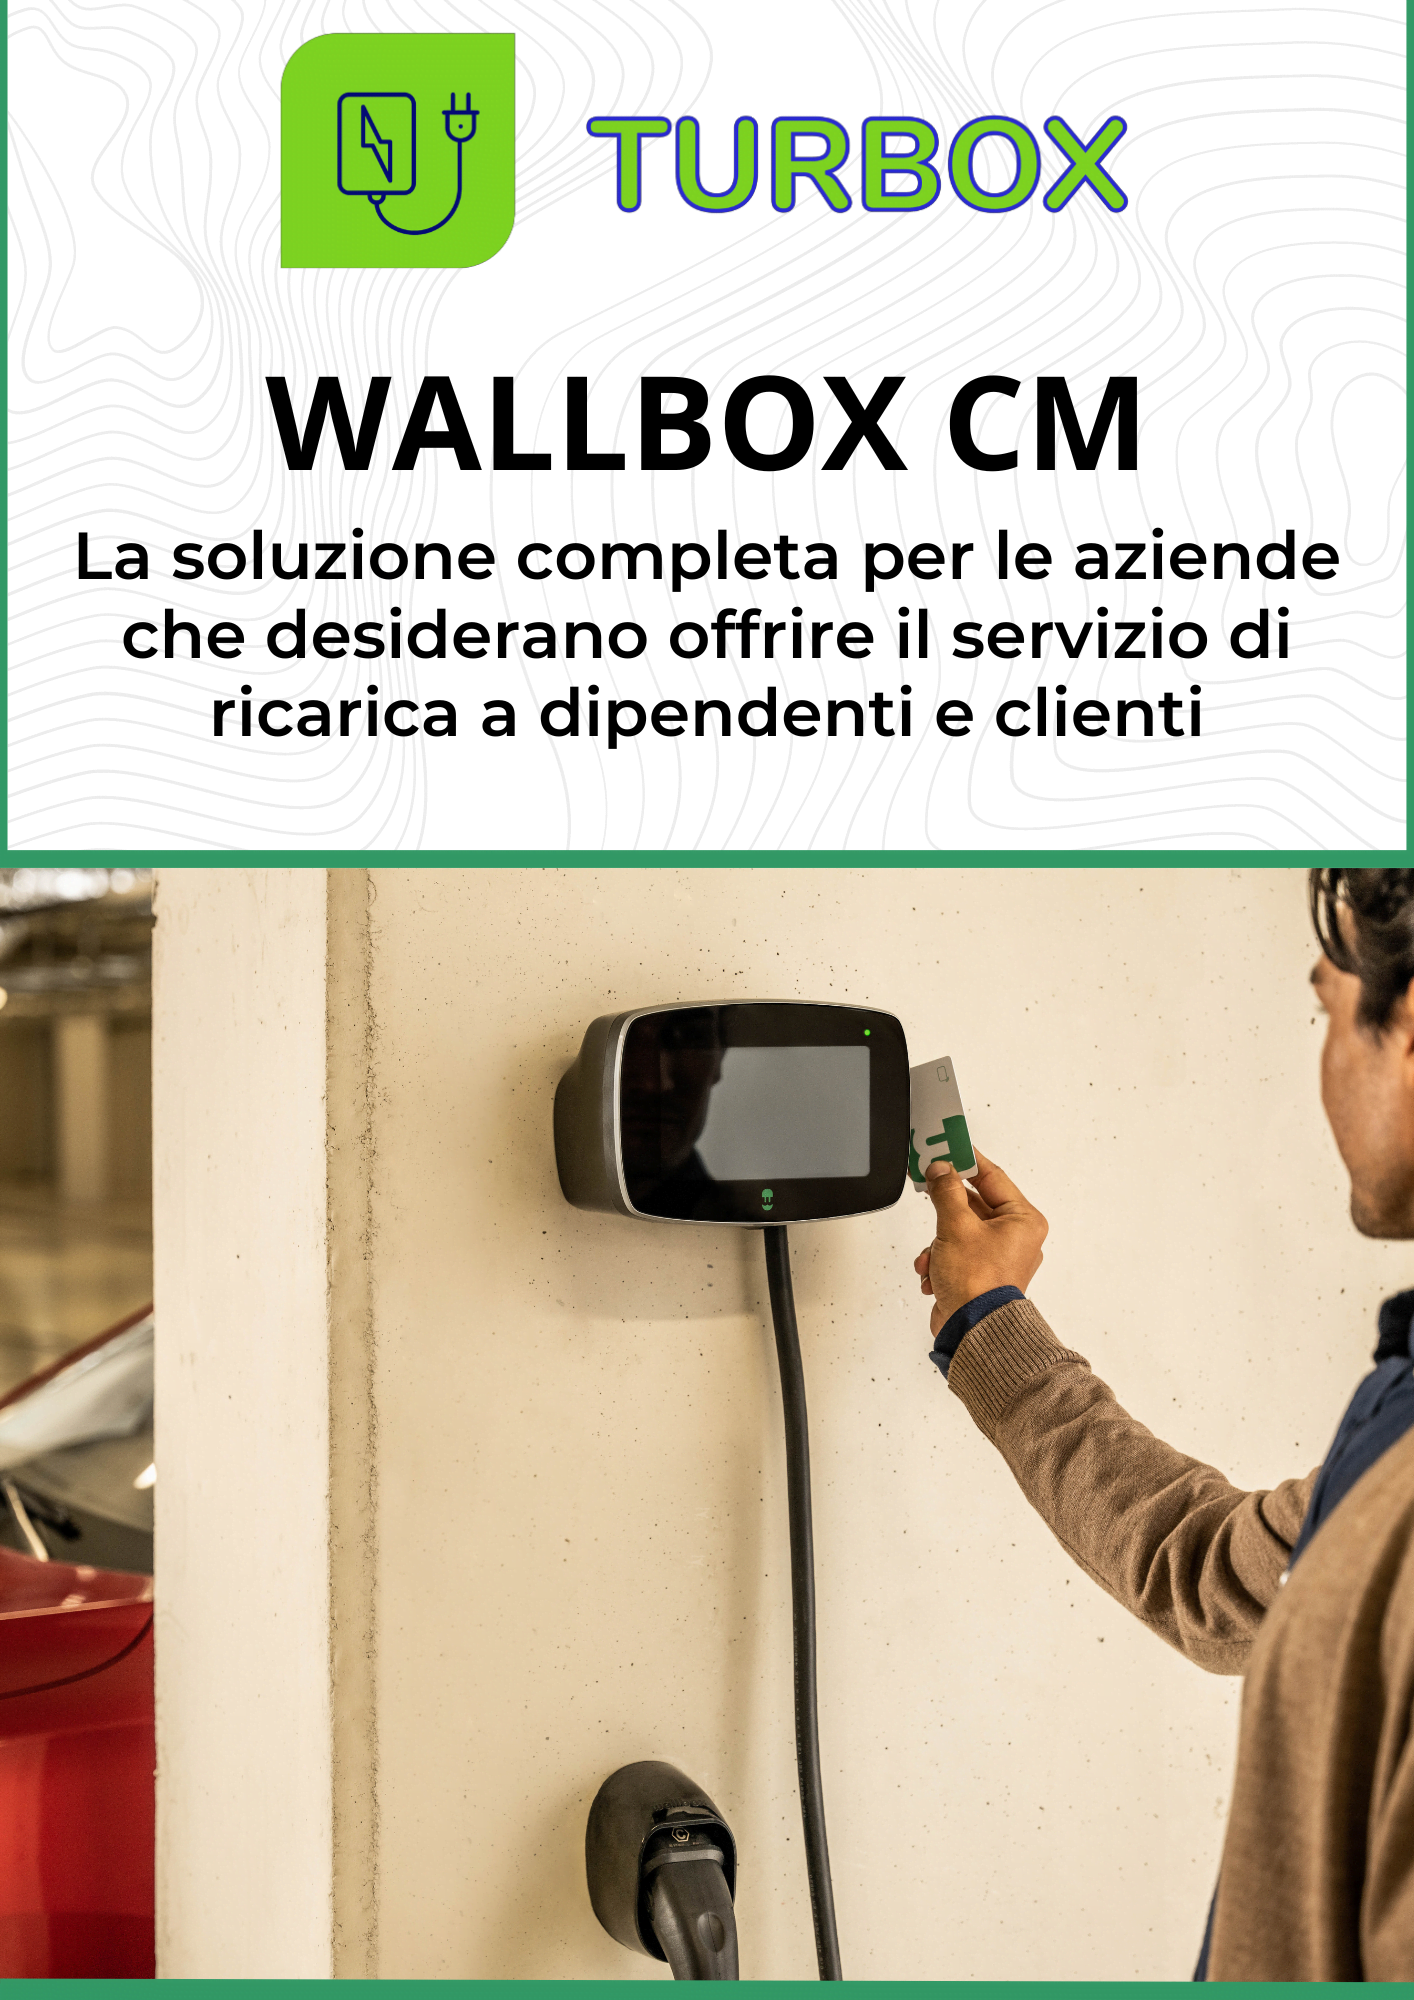 Wallbox per ricarica in azienda